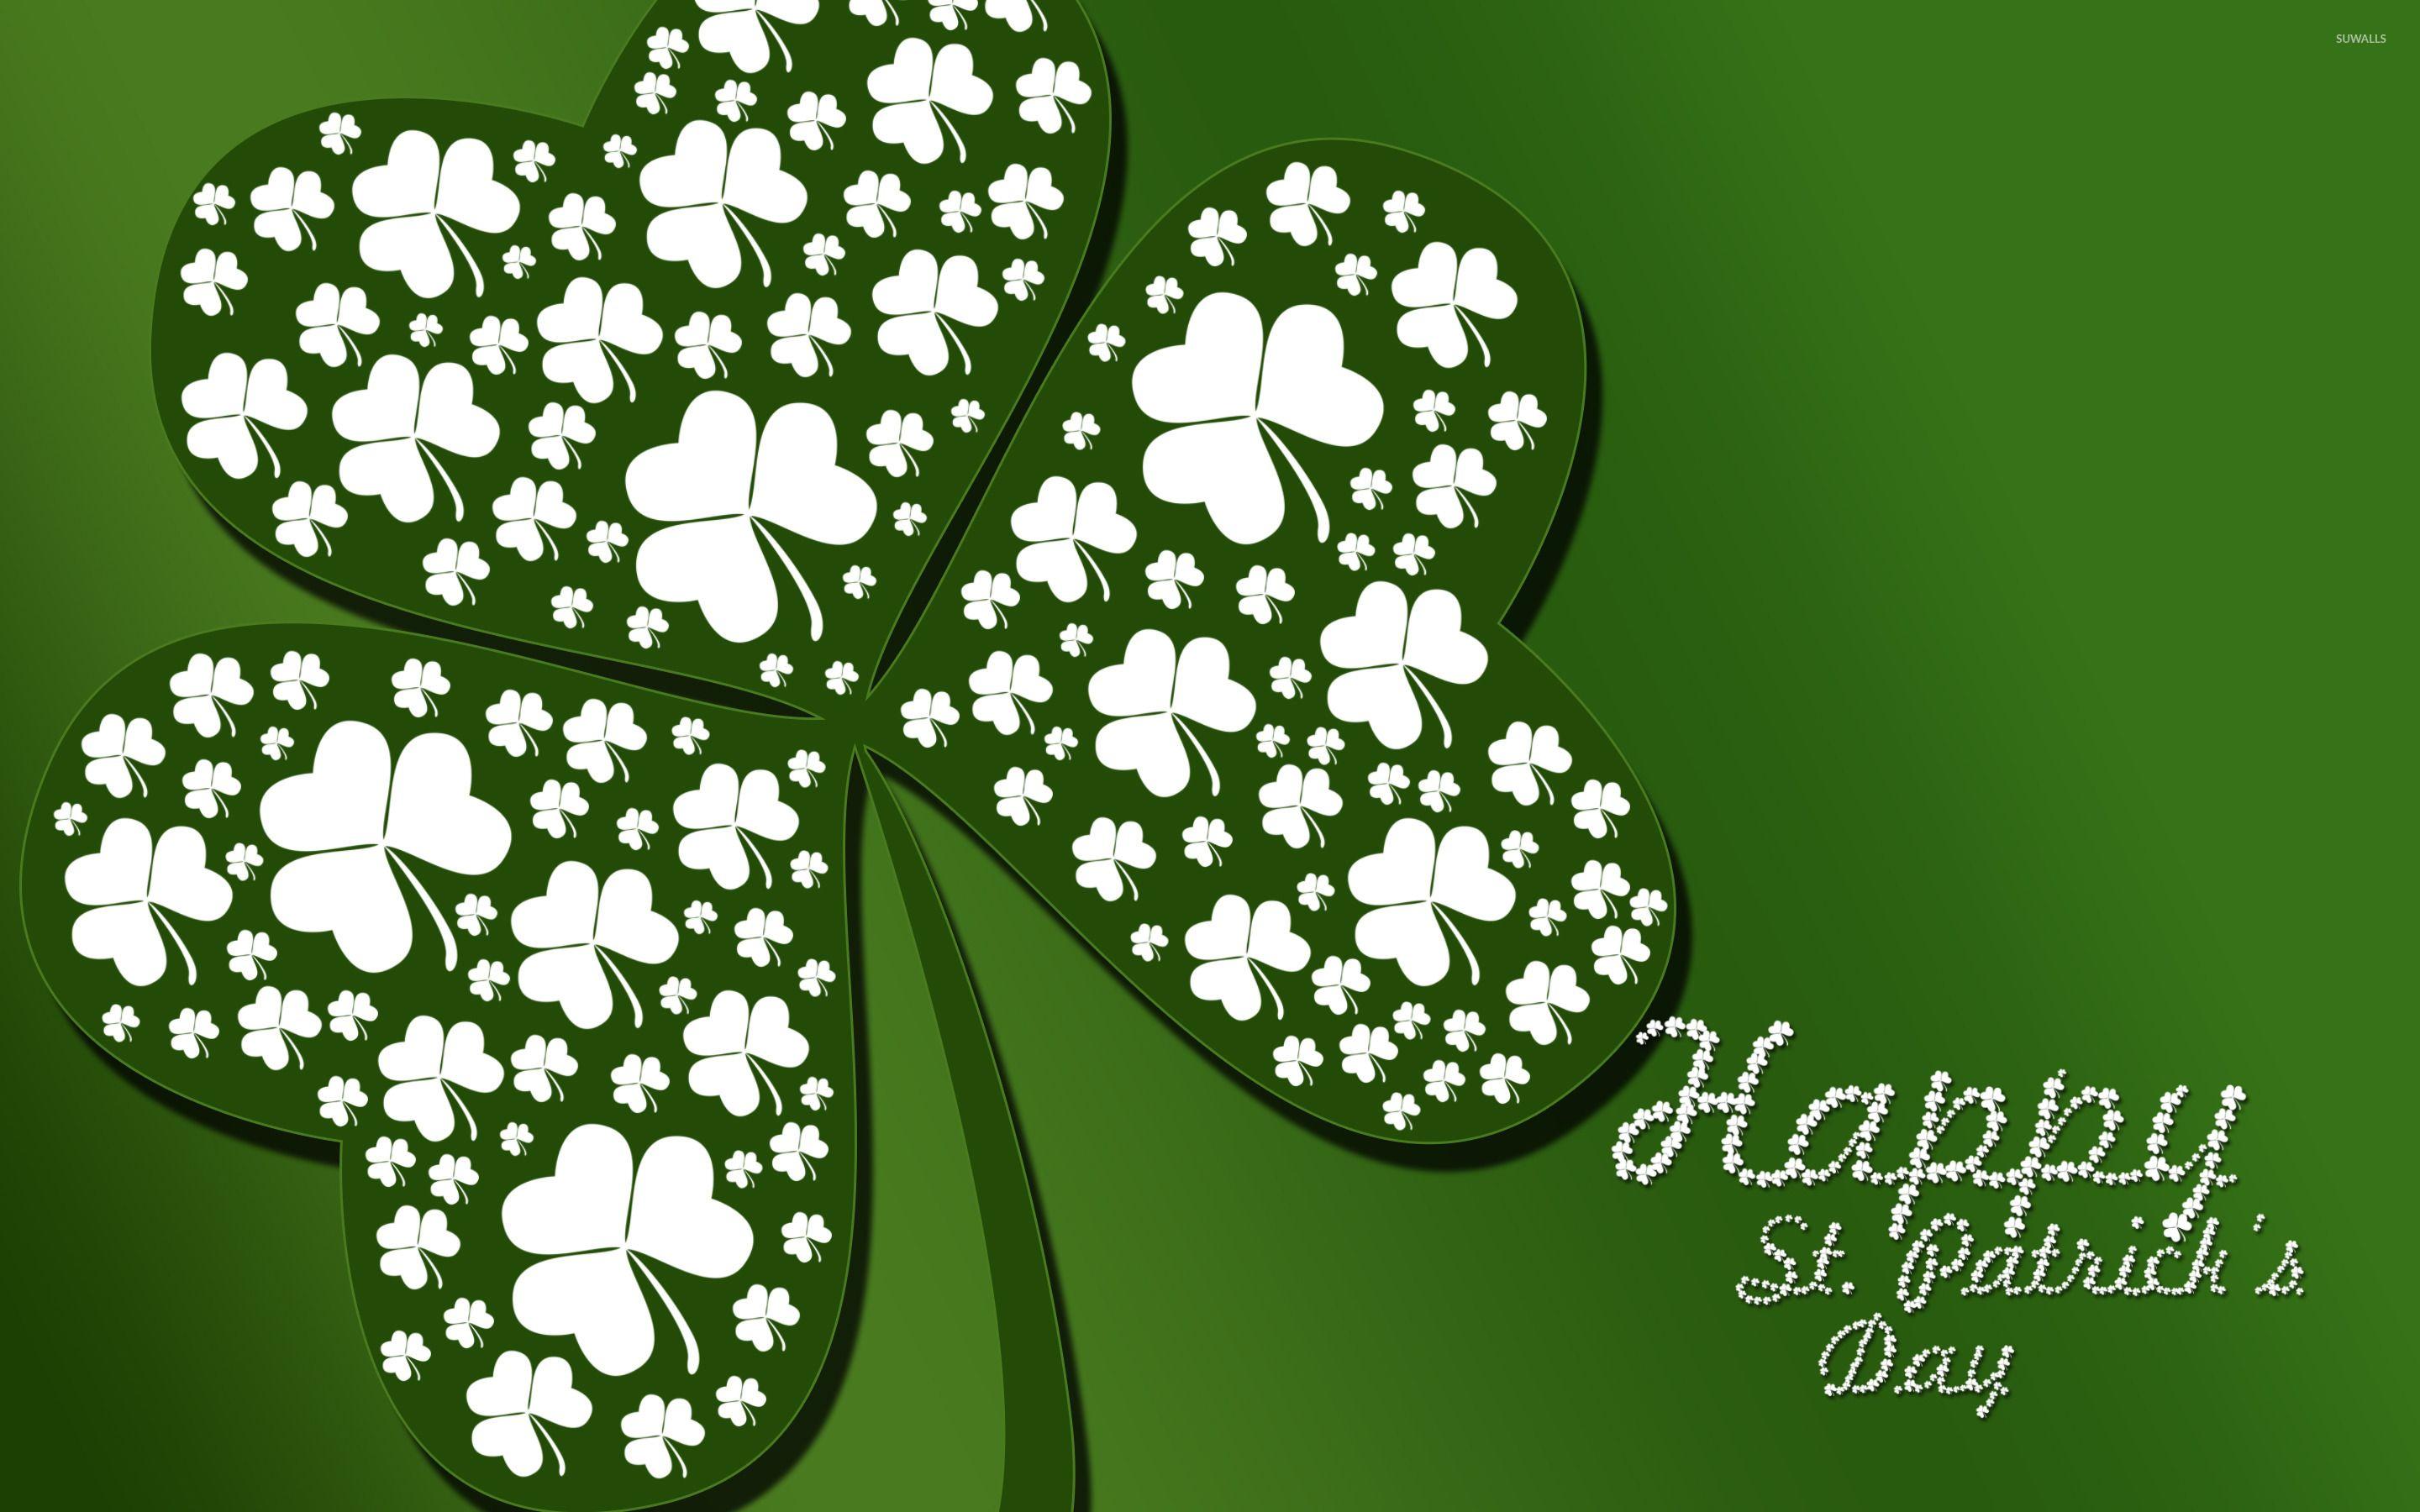 Tìm kiếm những bức tranh nền Lá fhéile Pádraig đẹp để chào đón Ngày của Thánh Patrick! Những hình ảnh này sẽ mang đến cho bạn cảm giác vui tươi, hân hoan và thật sự vui mừng. Hãy tìm kiếm ngay để có thể tải xuống và sử dụng trên điện thoại hoặc máy tính của bạn.